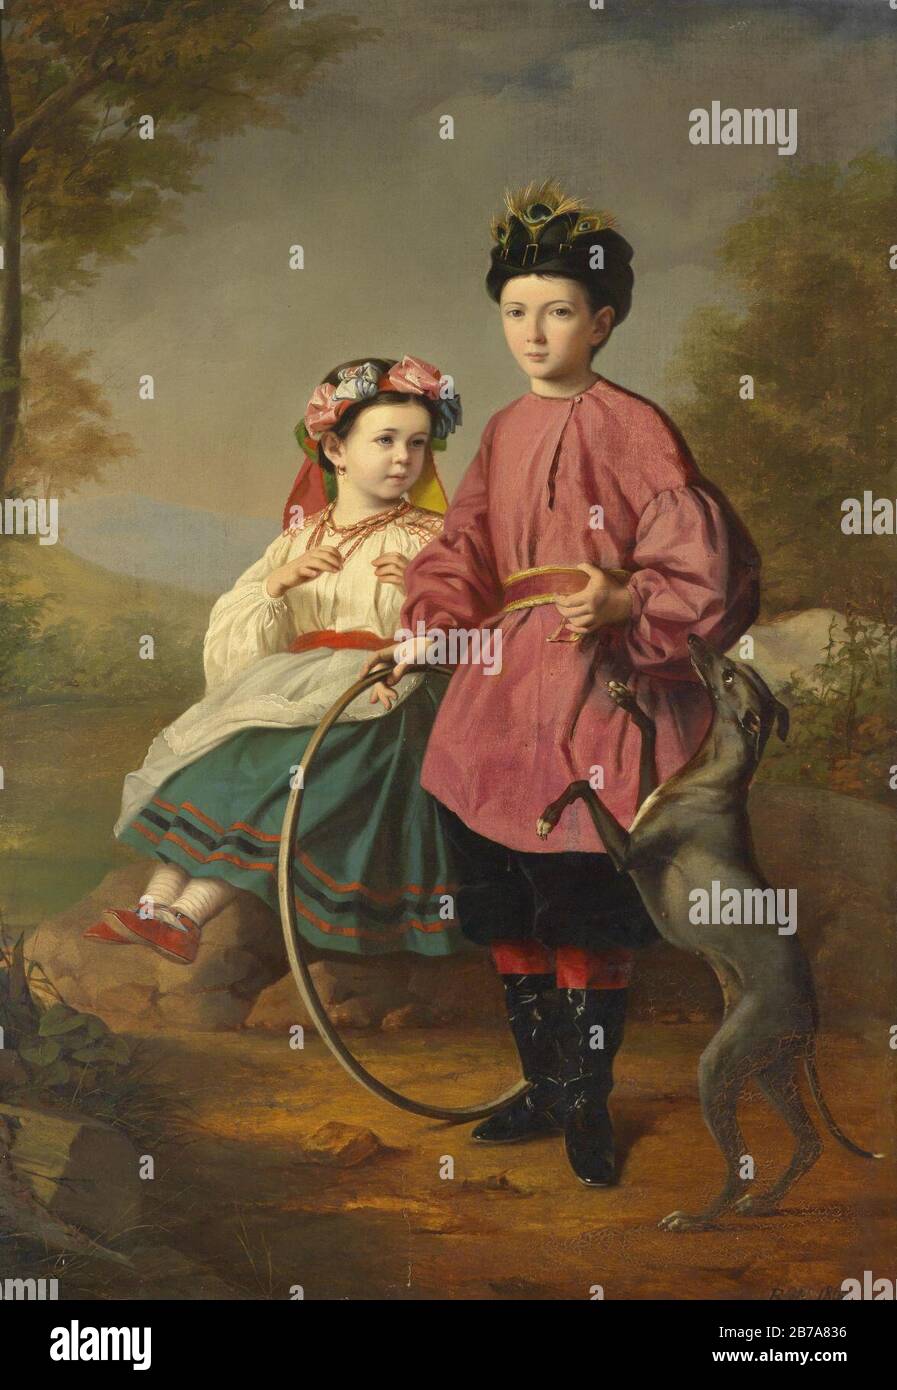 Geschwister mit Windhund und Reifen 1860. Stock Photo